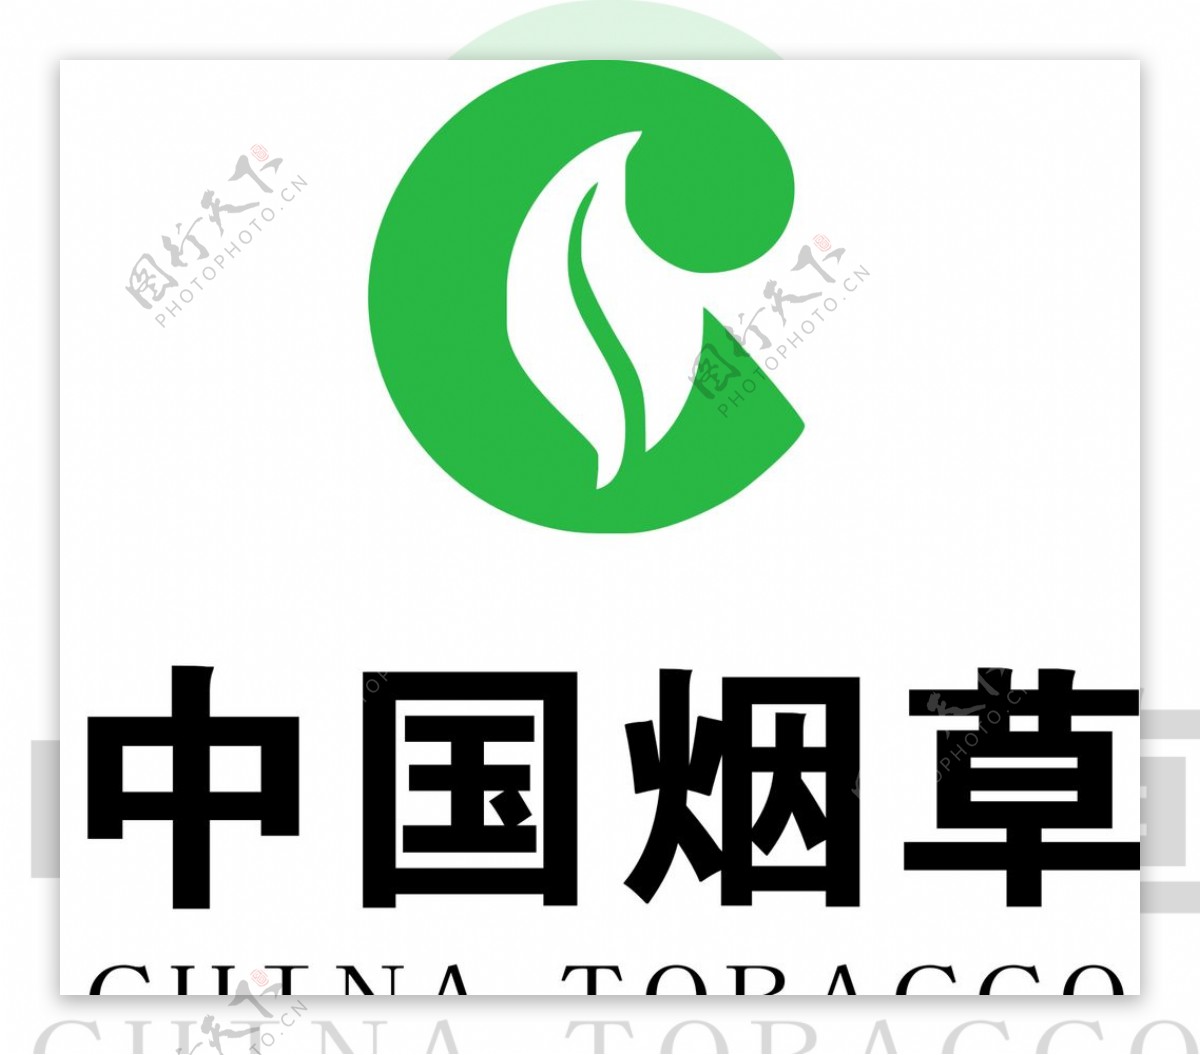 中国烟草LOGO